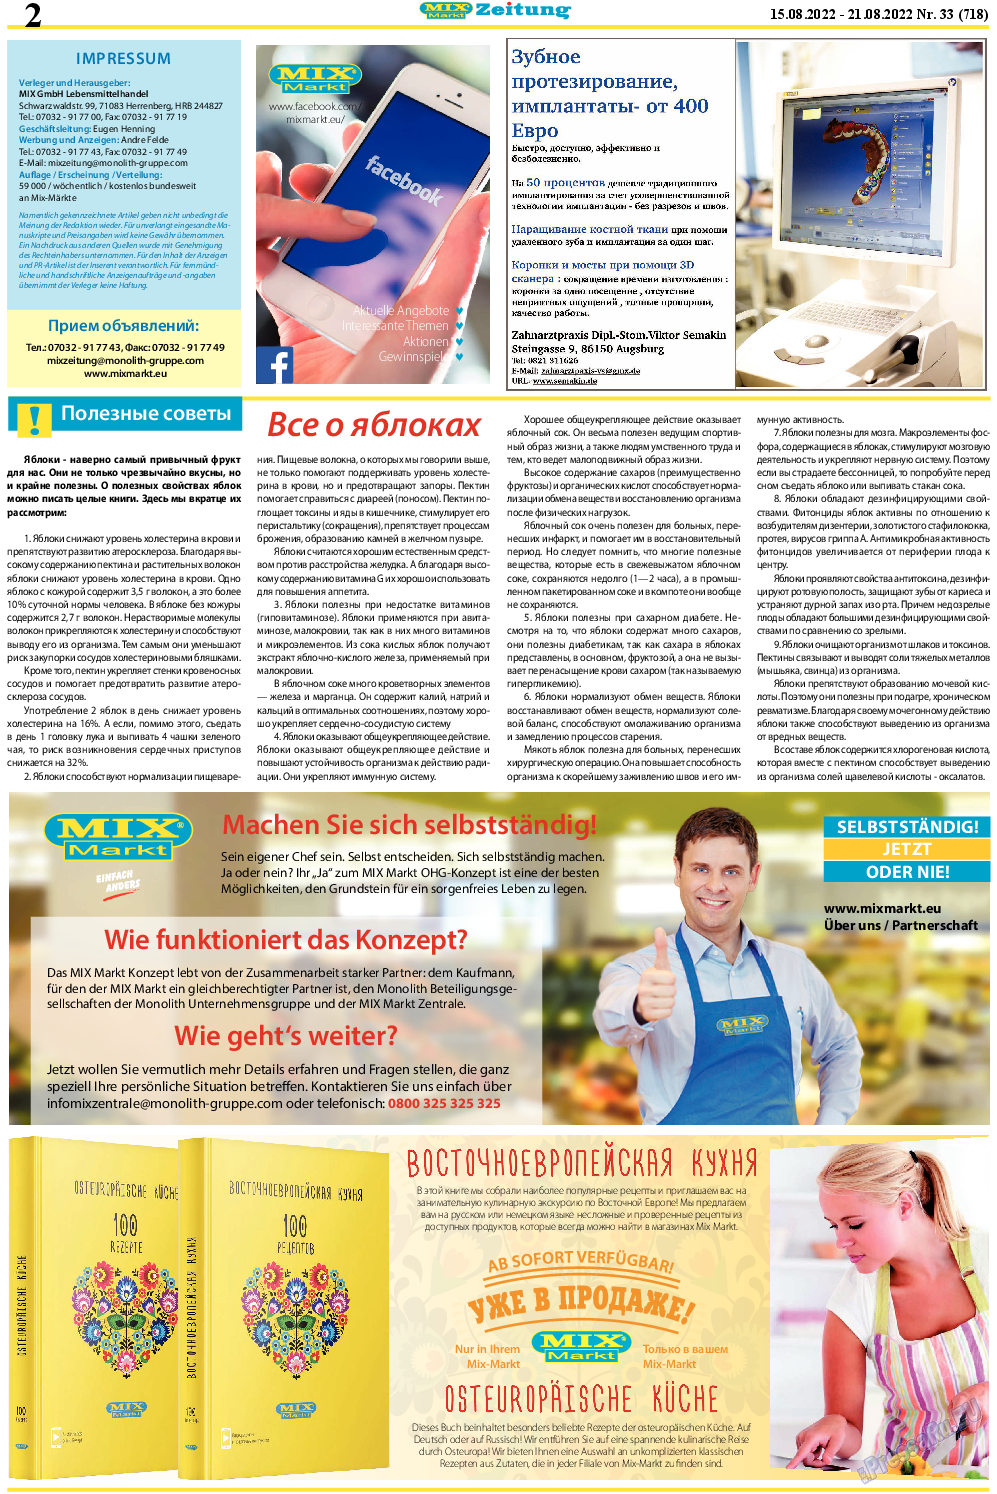 MIX-Markt Zeitung, газета. 2022 №33 стр.2